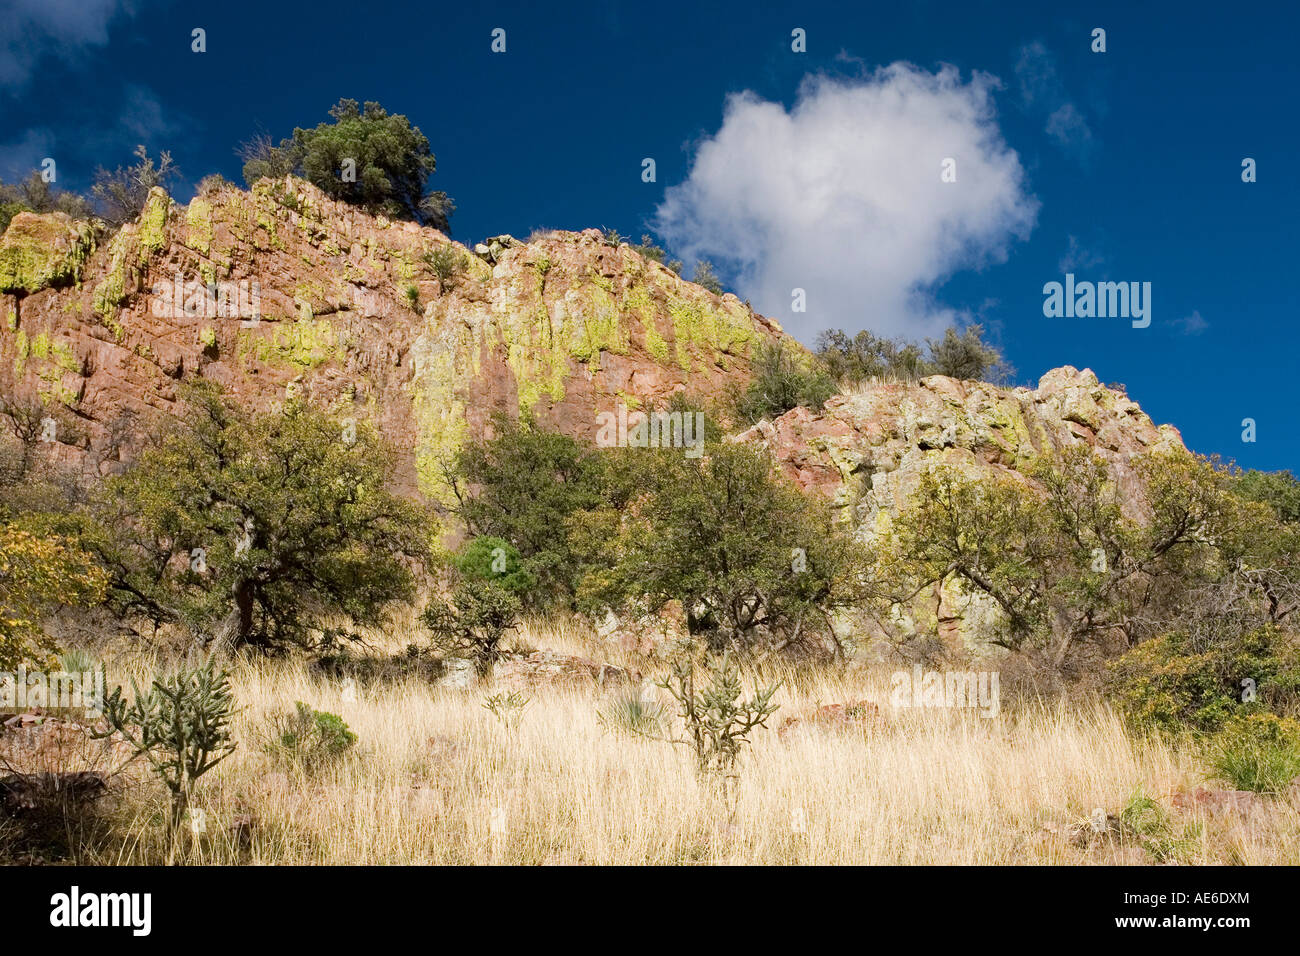 Le lichen couvre des affleurements rocheux dans les contreforts de l'Huachuca Mountains près de Sierra Vista, Arizona Banque D'Images